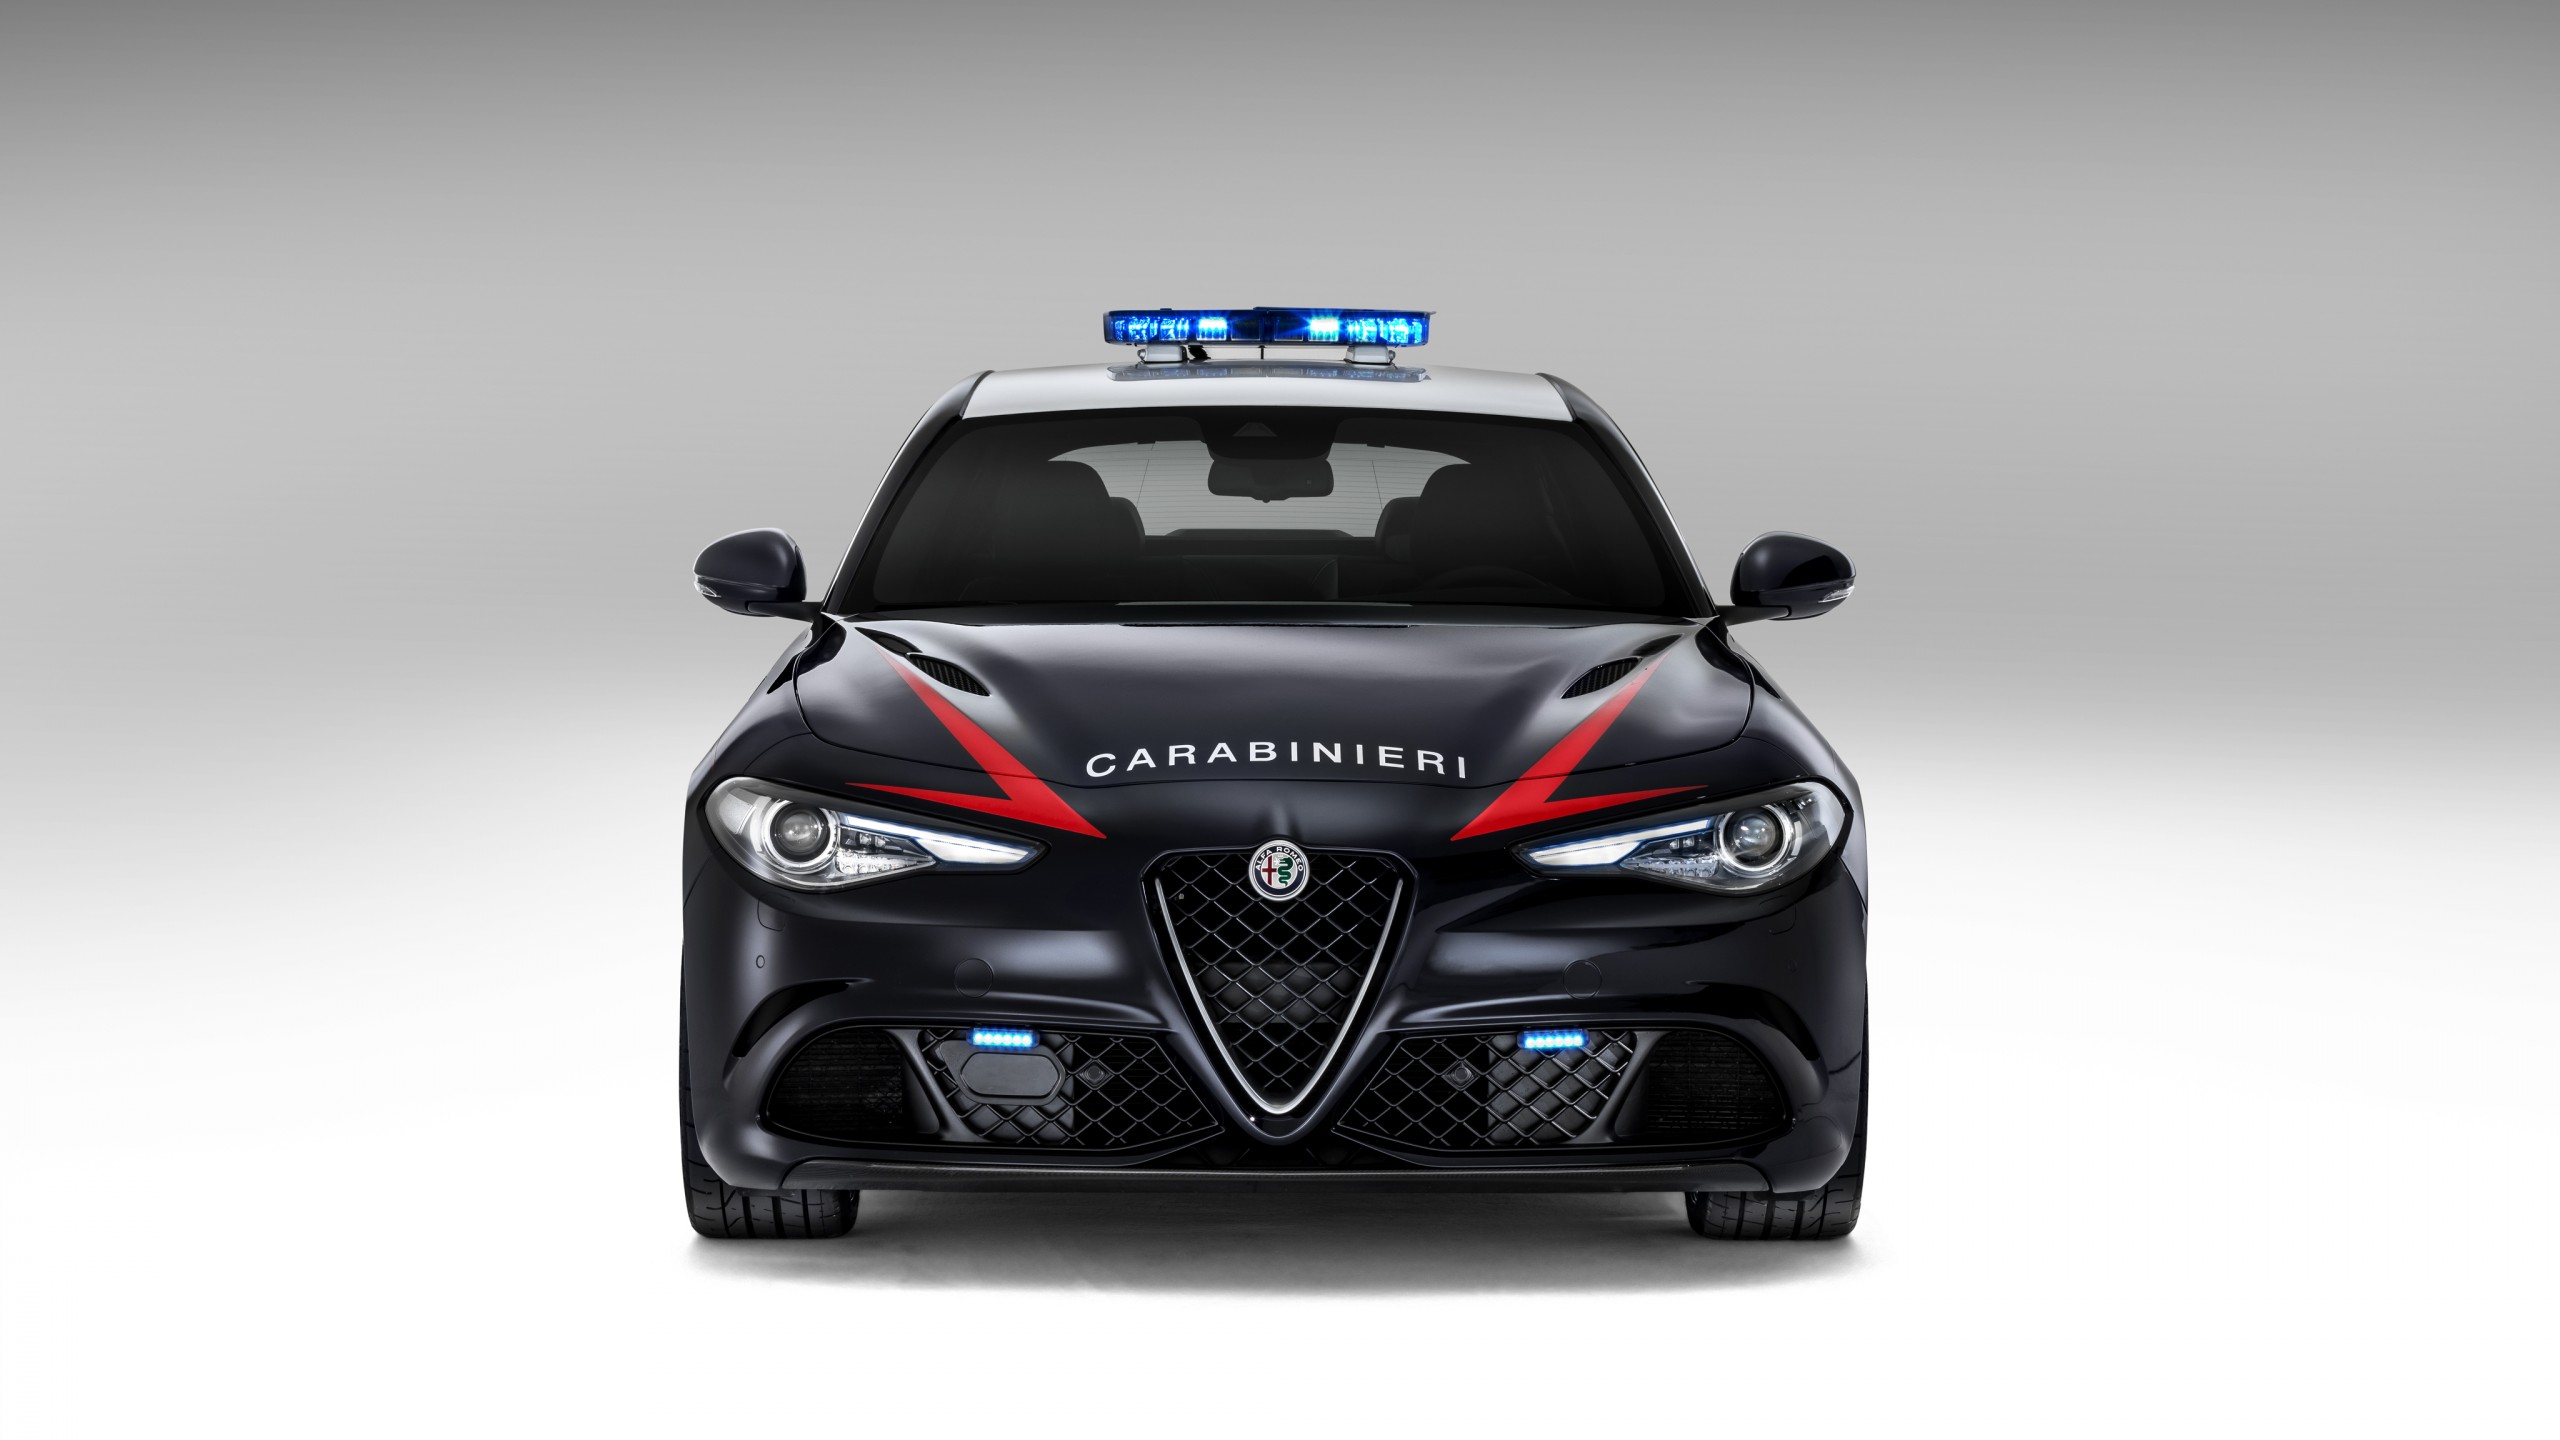 Wallpaper Alfa Romeo Giulia Quadrifoglio Carabinieri police